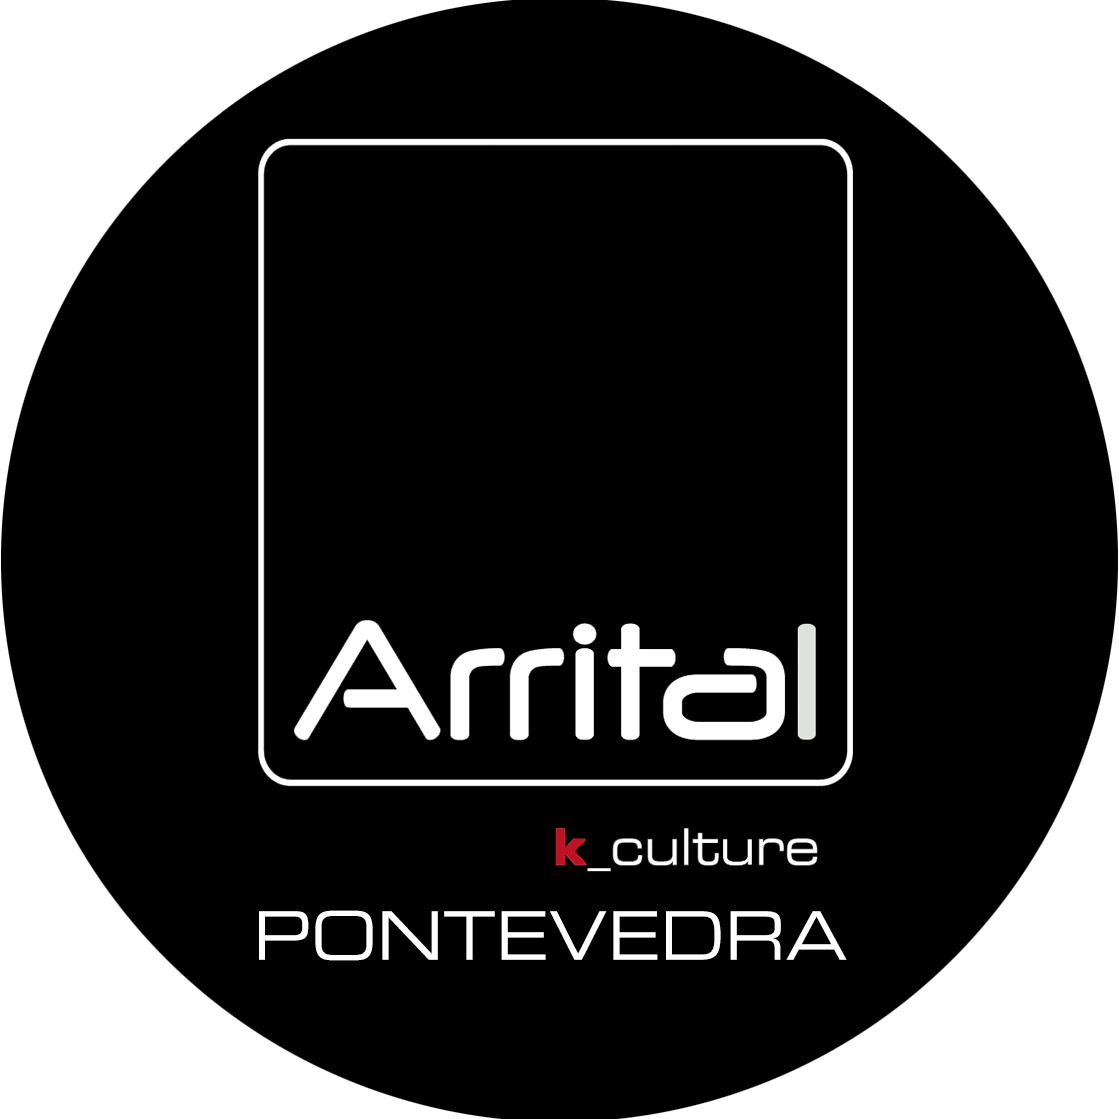 Arrital Pontevedra